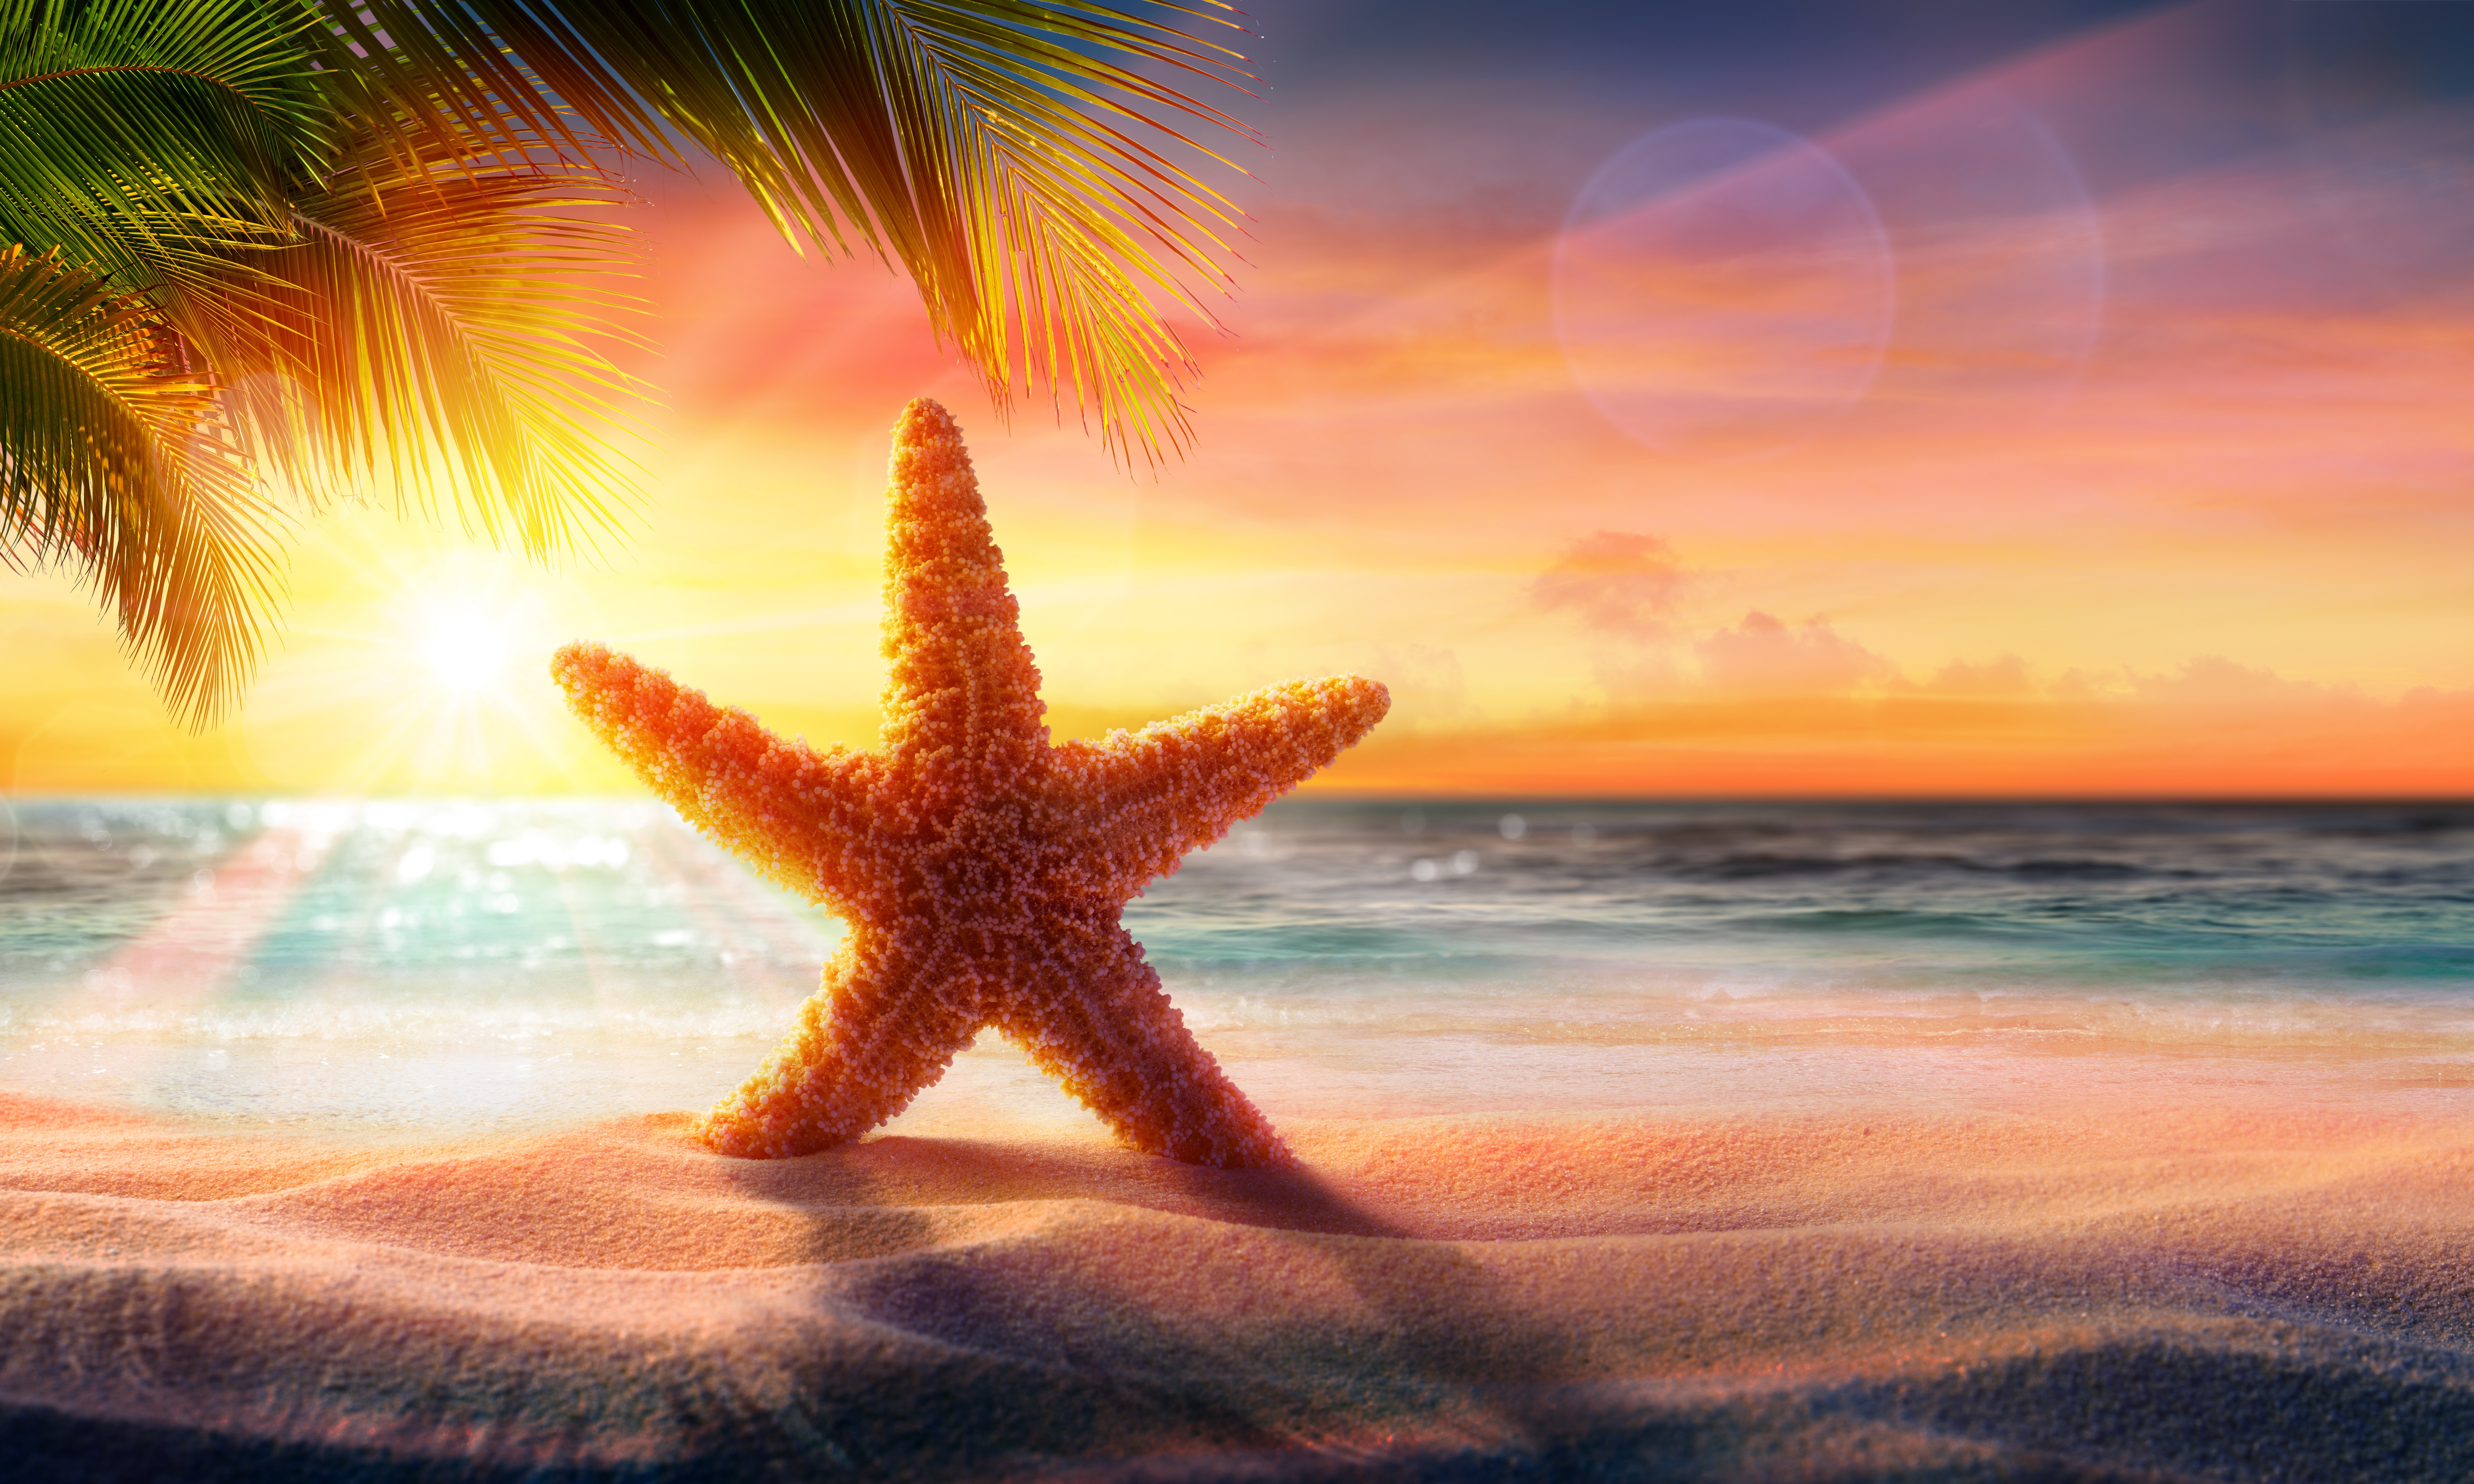 Beach Sand Starfish Sunrise 9250x5550